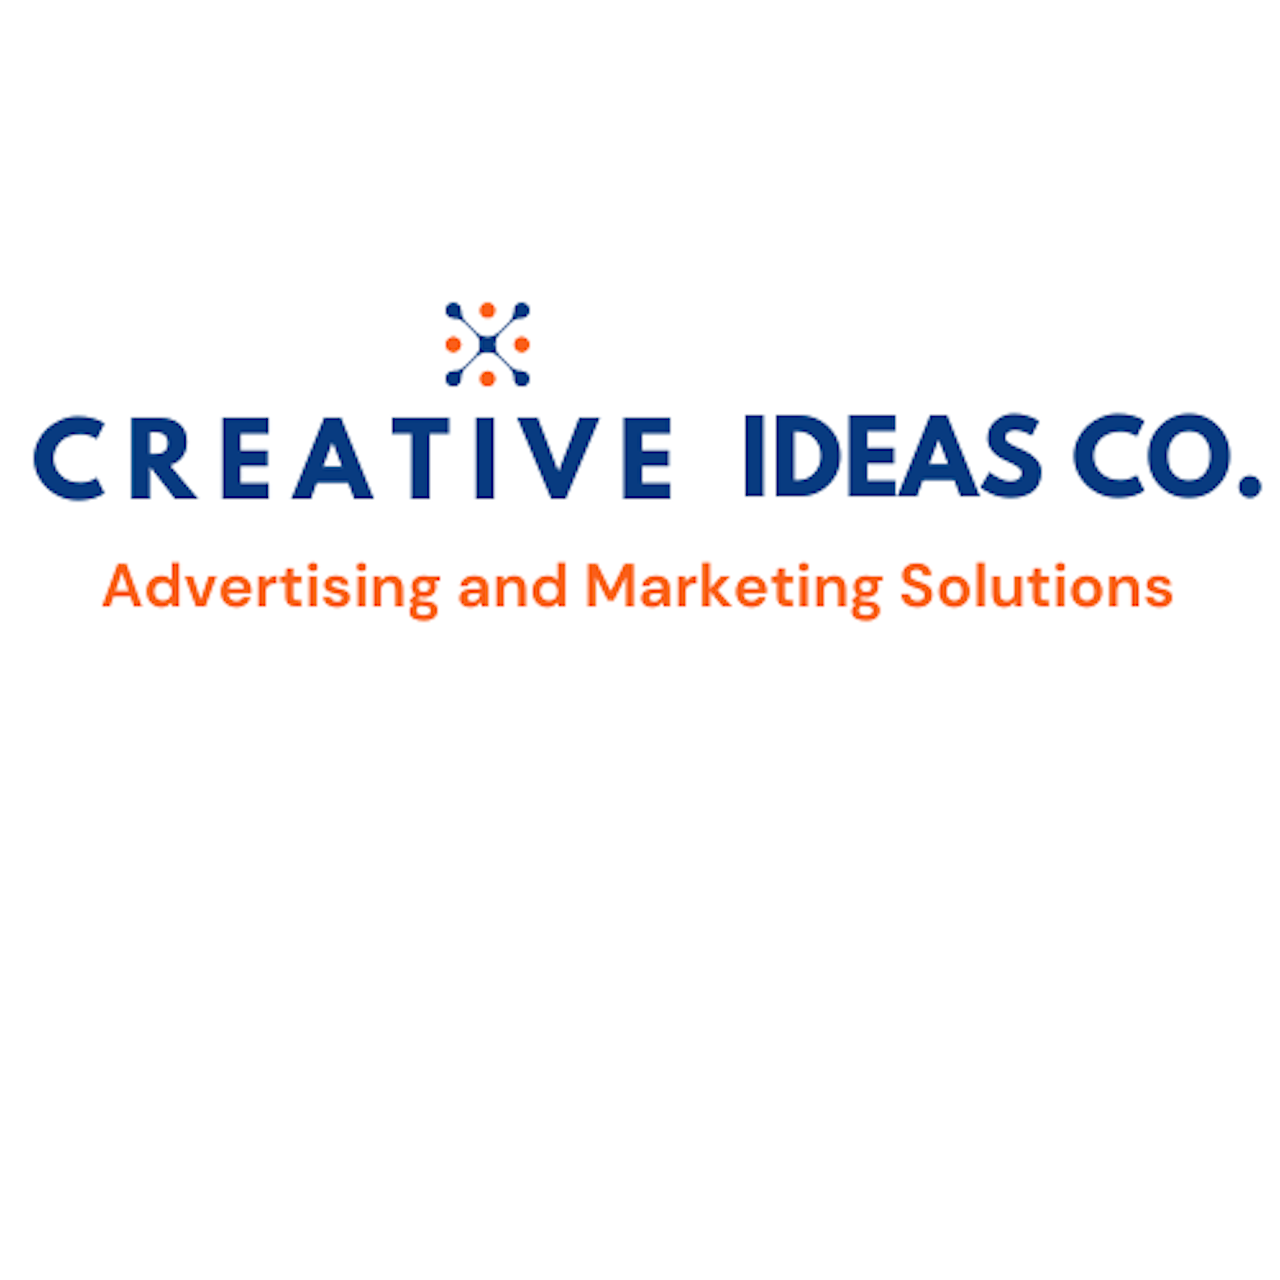 Creative Ideas Co.'s Logo